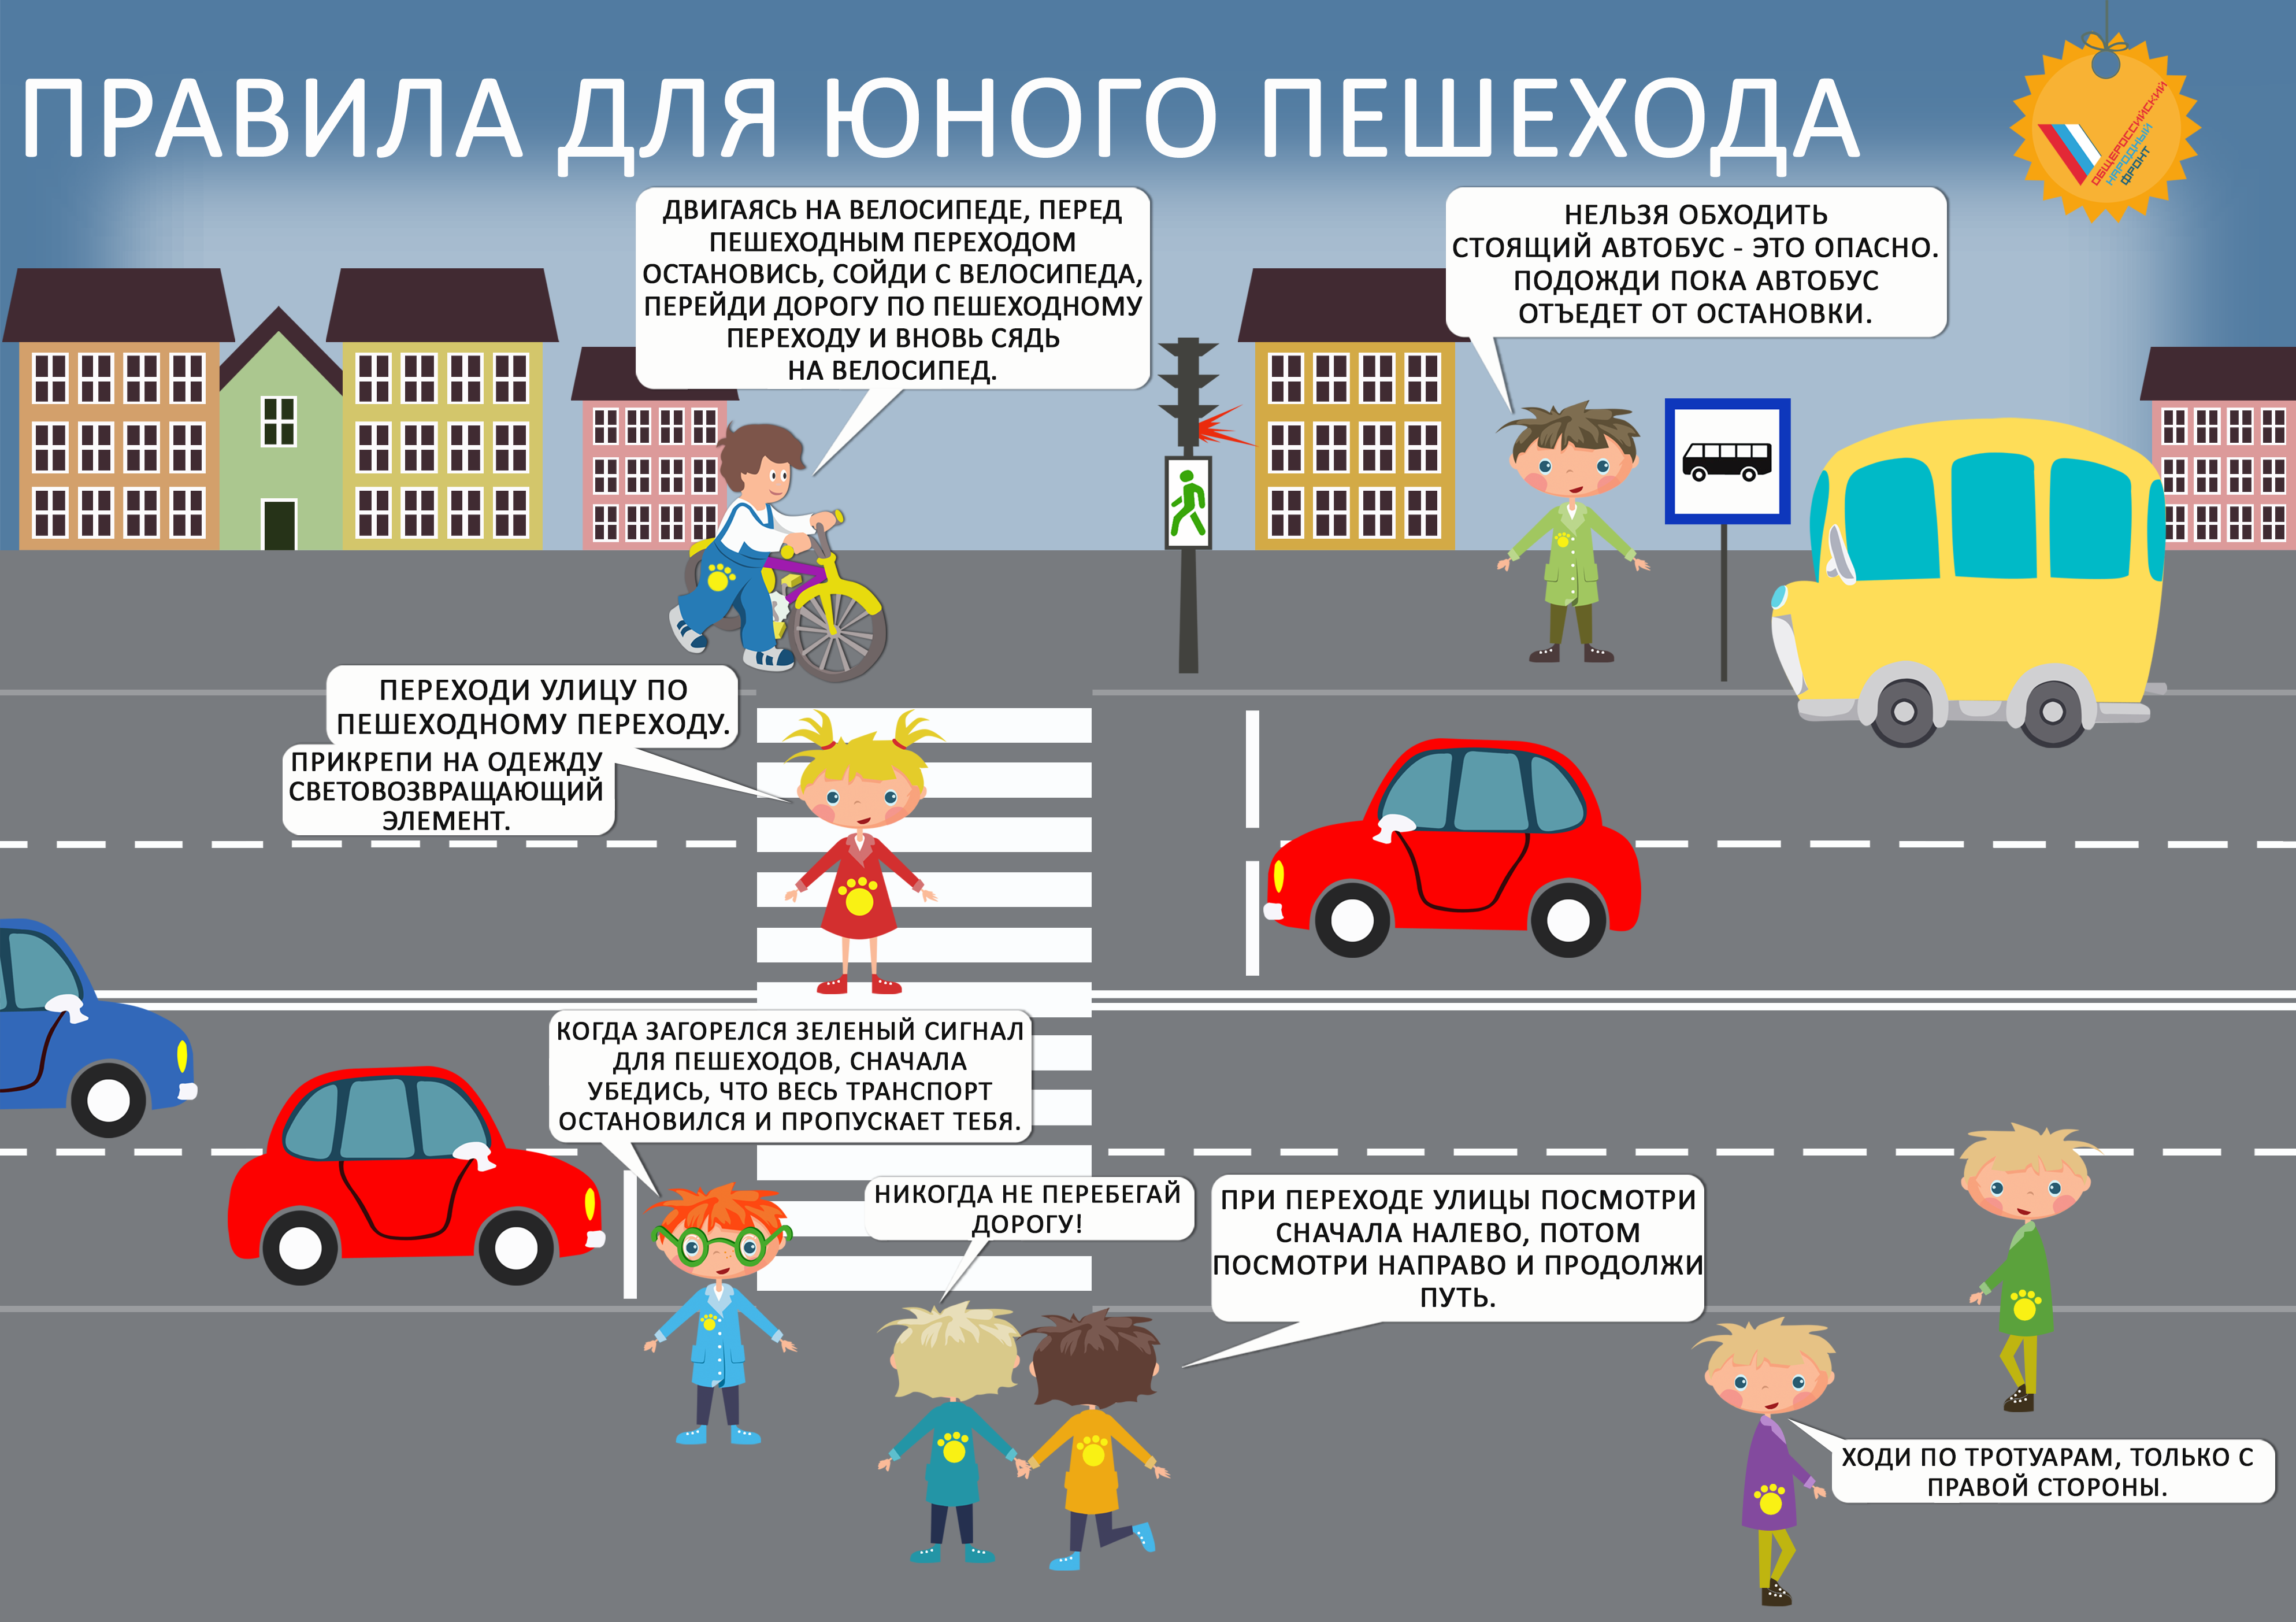 Правила дорожного движения для детей. Правила дорожного движения для пешеходов. Правила дорожного движения для пешеходов для детей. Правило дорожного движения для детей. Правила пешеходного движения на дорогах